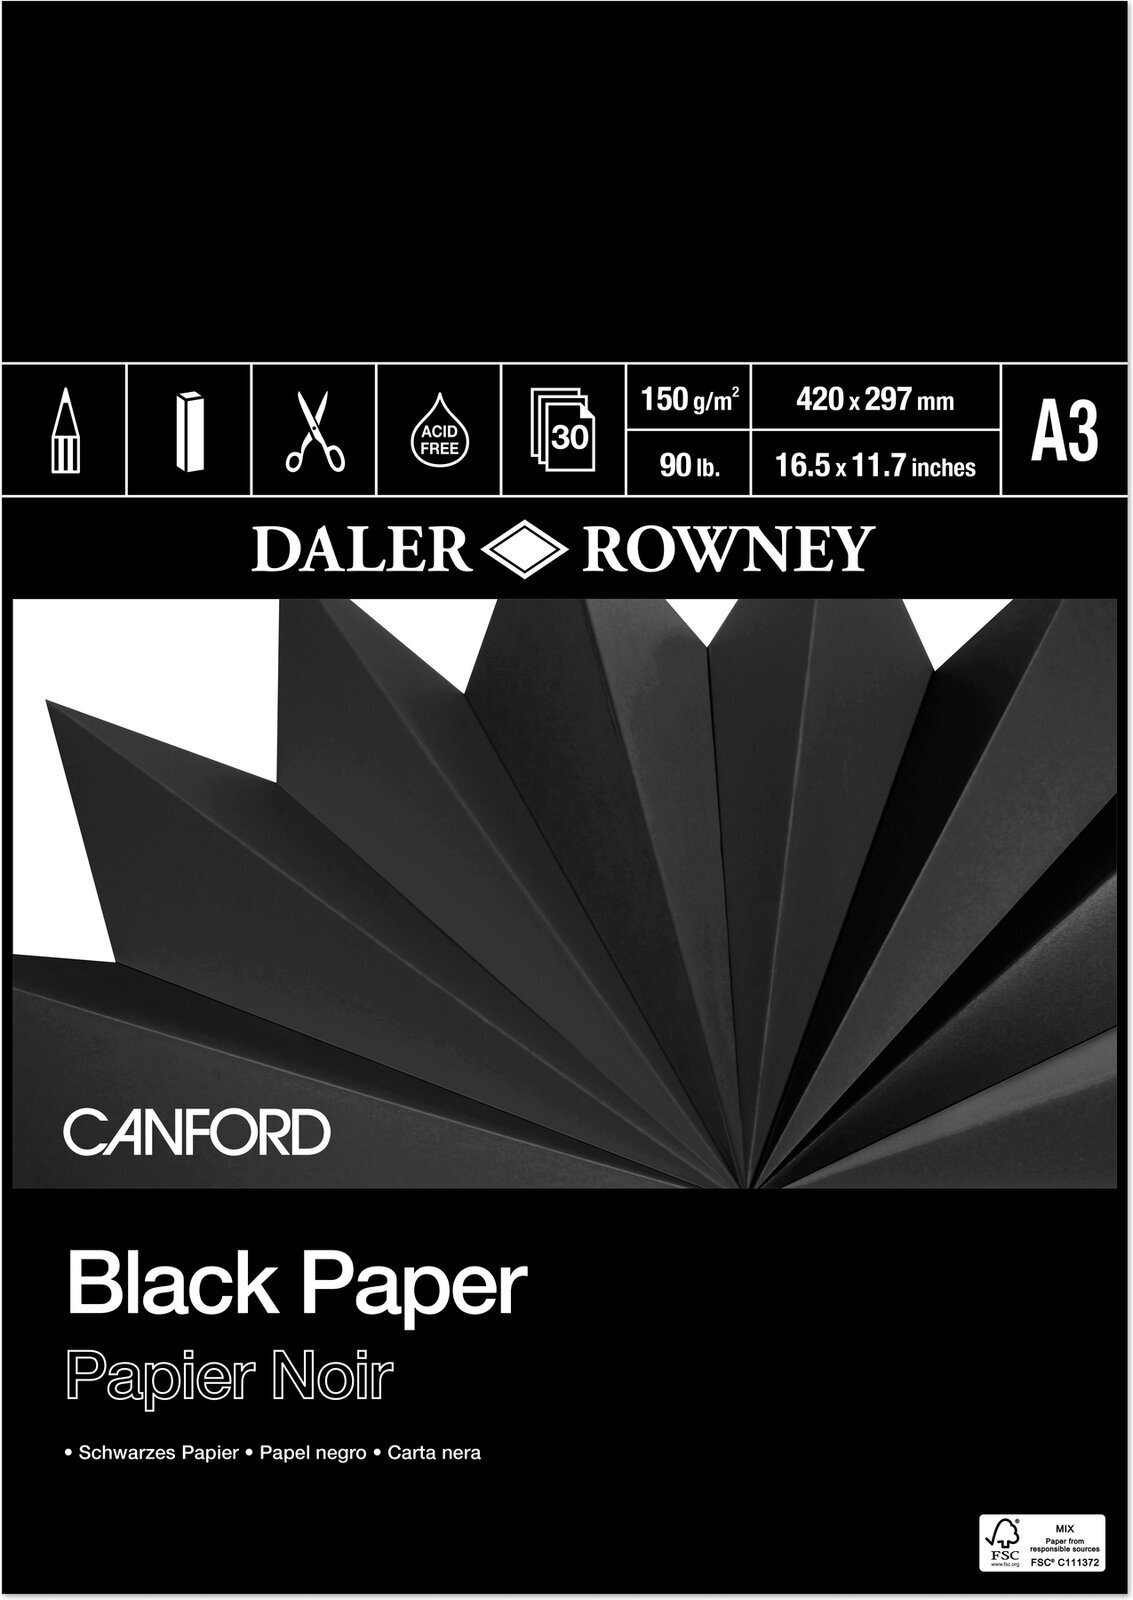 Vázlattömb Daler Rowney Canford Coloured Paper A3 150 g Vázlattömb